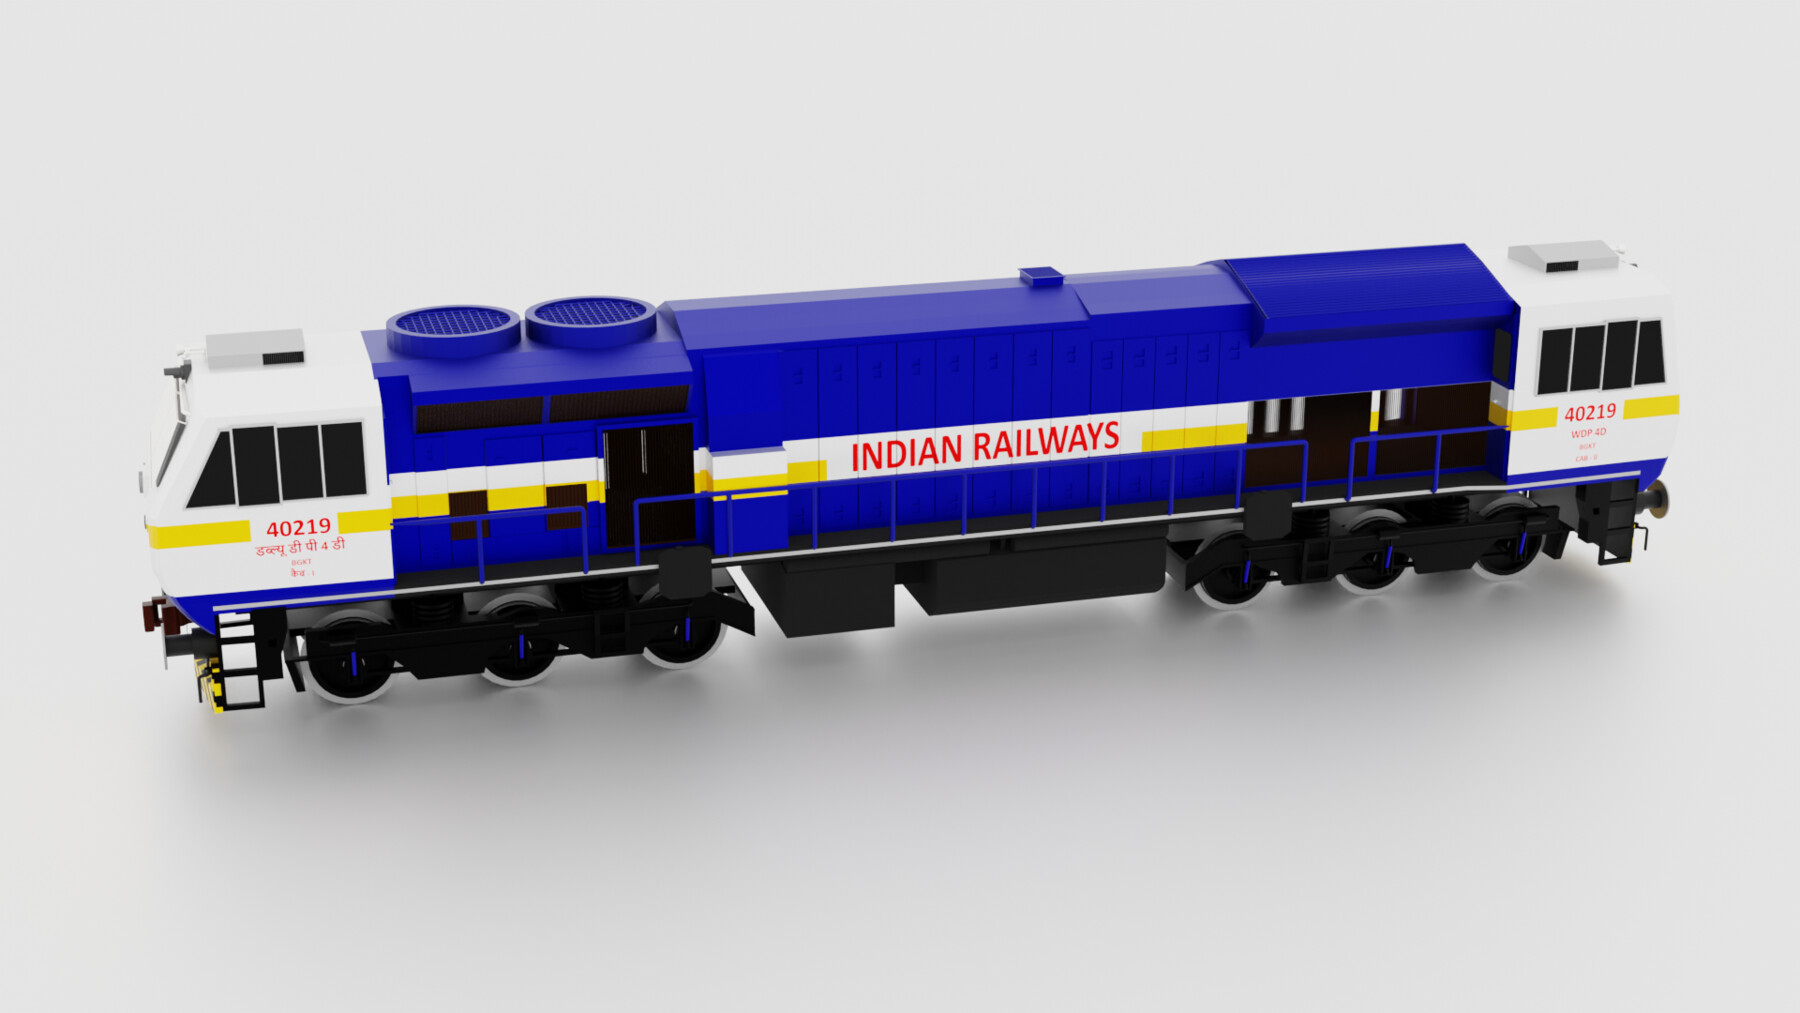 wdp-4d-of-indian-railway-3d-model-3d-model-shop-reparatucoche